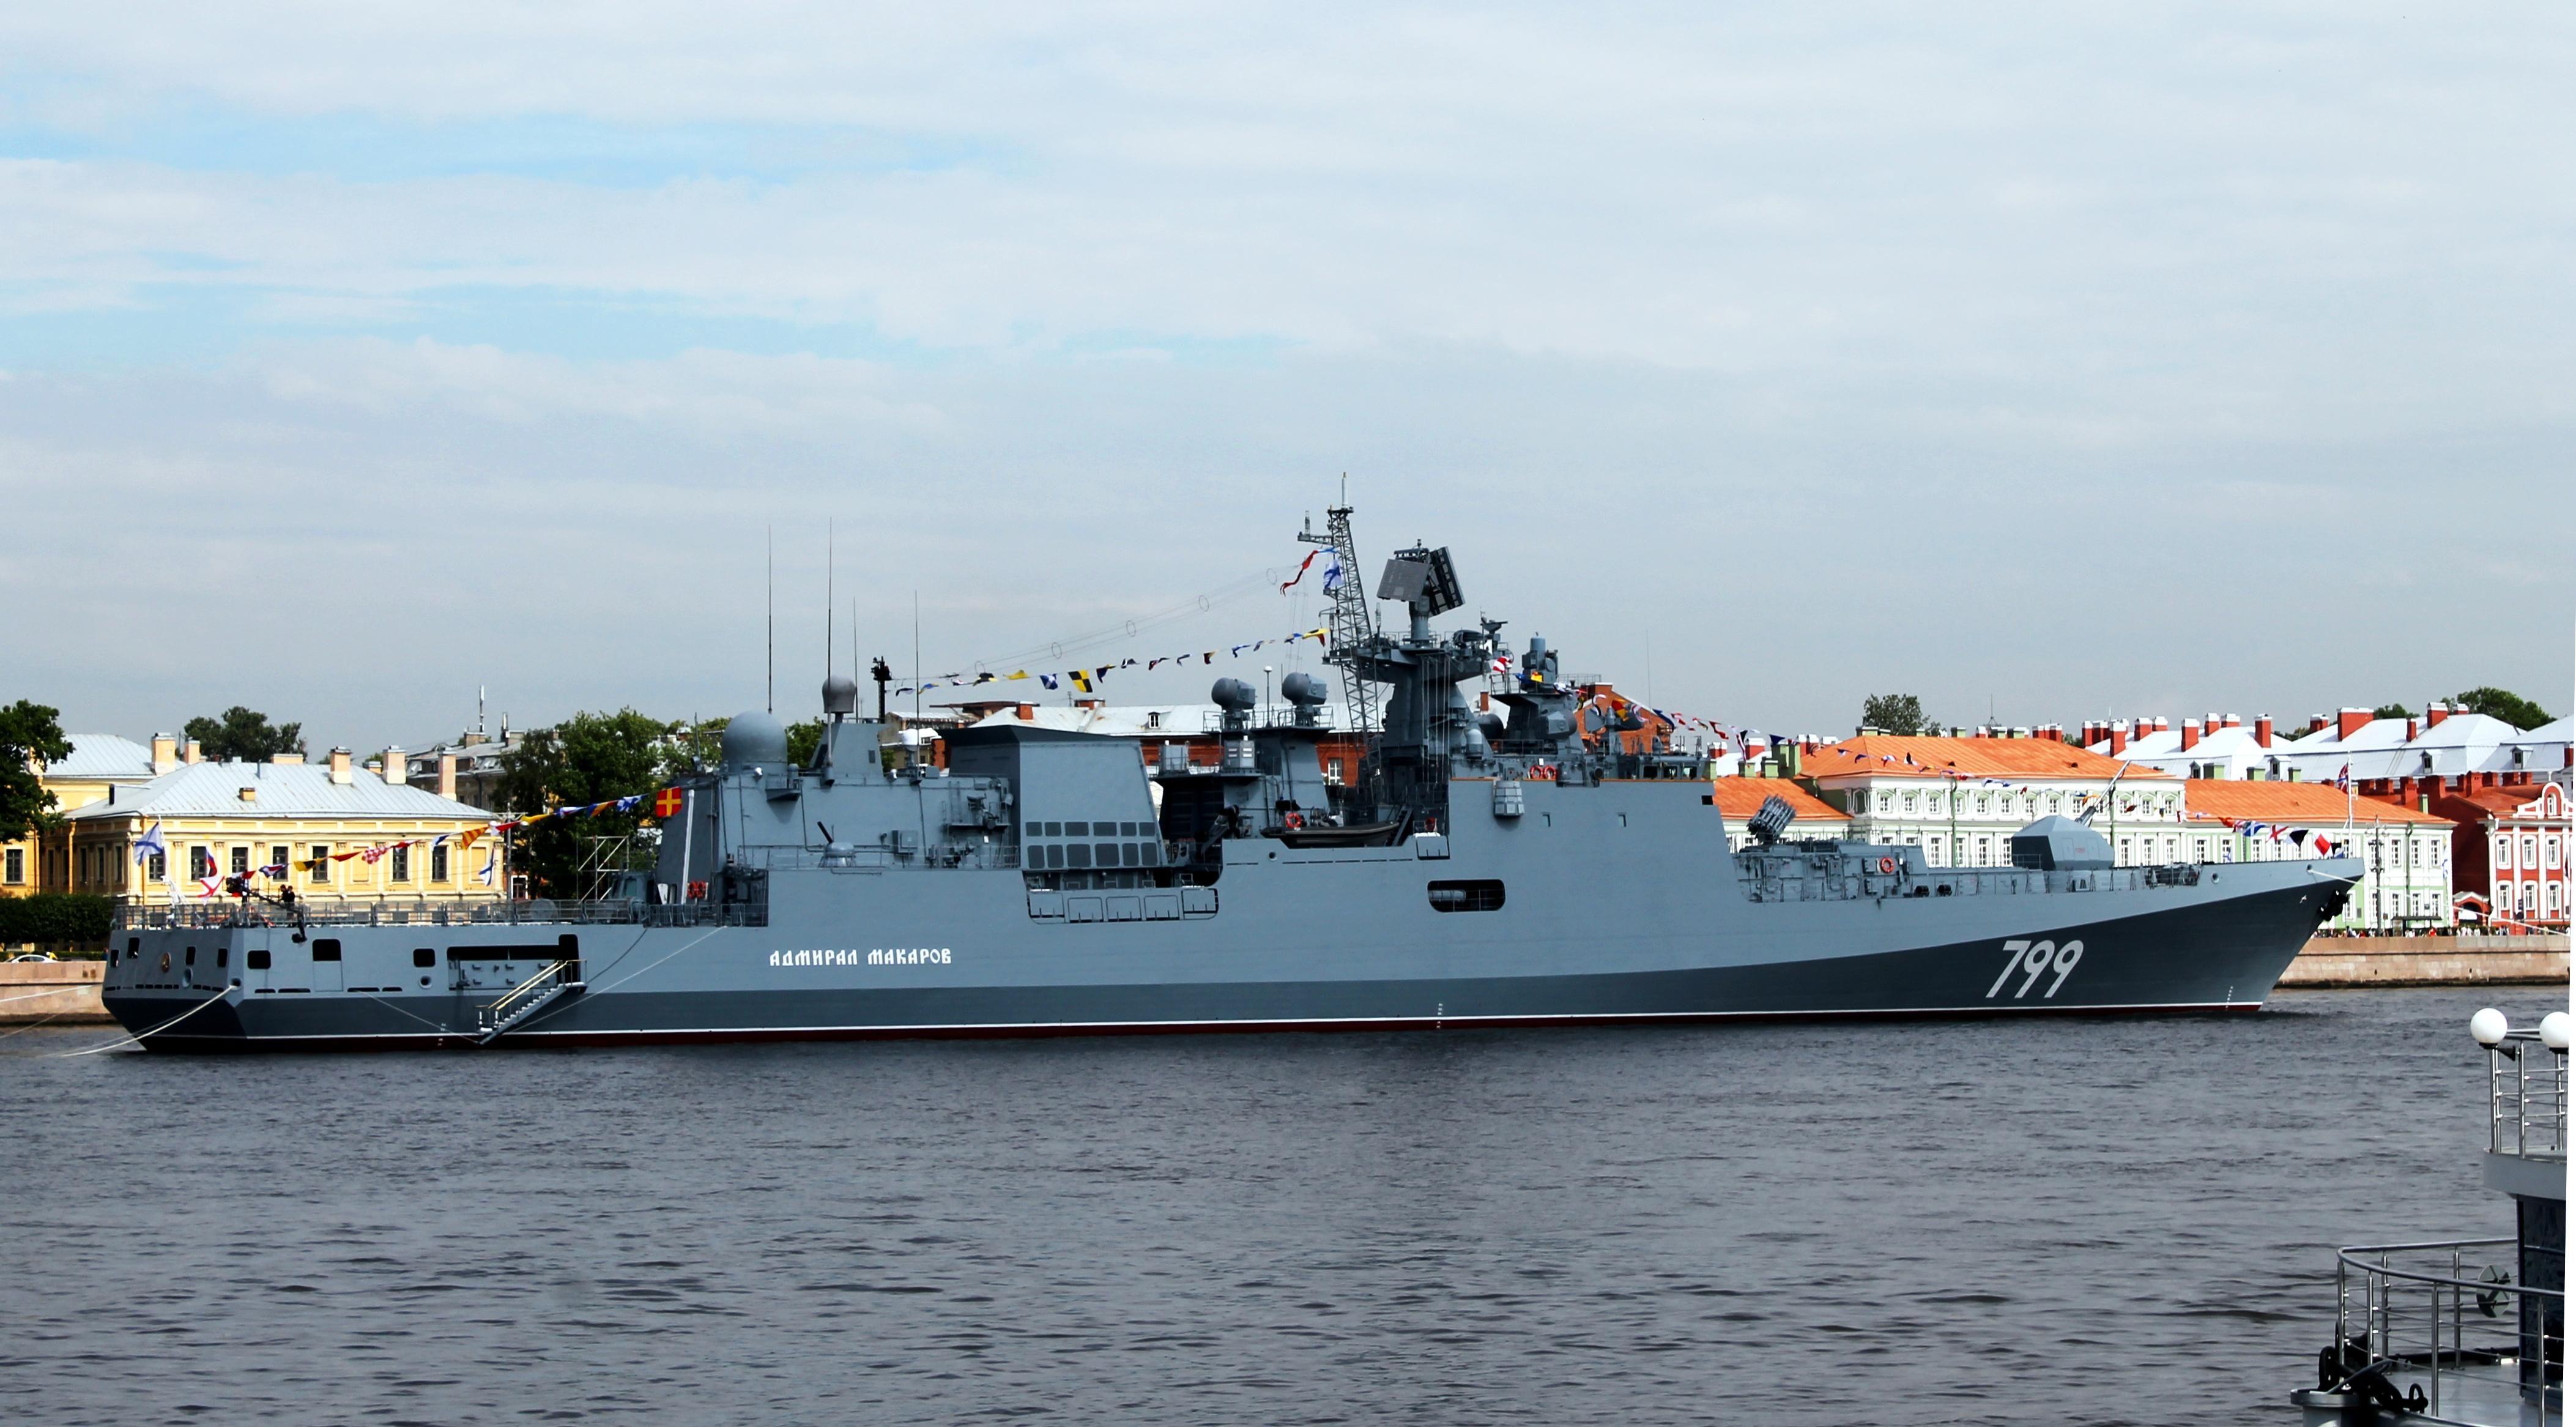 Початок зустрічі з "Москвою": Братчук відреагував на вихід "Адмірала Макарова" в Чорне море